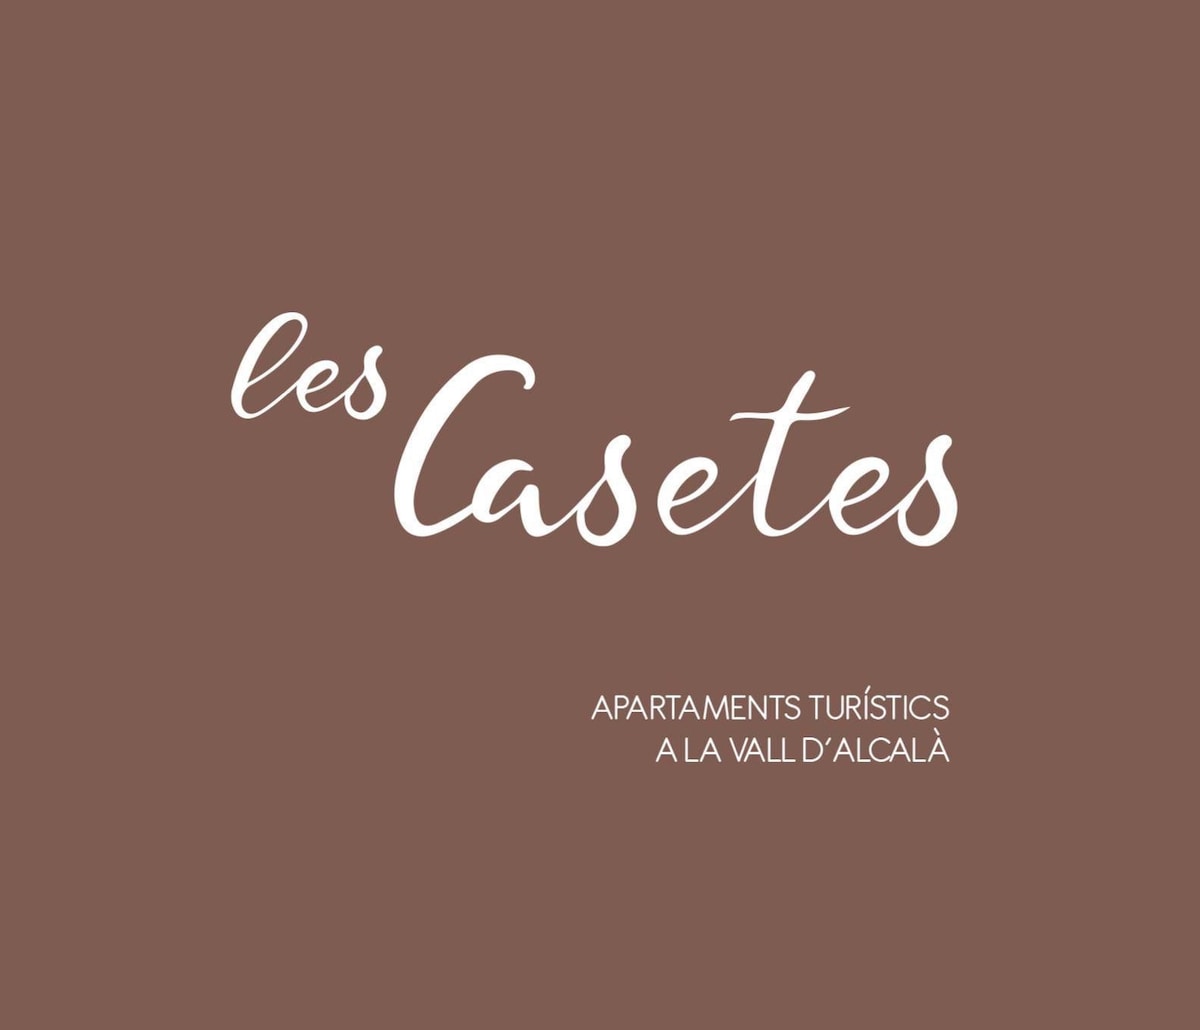 Les Casetes La Vall d 'Alcalà - Ap1